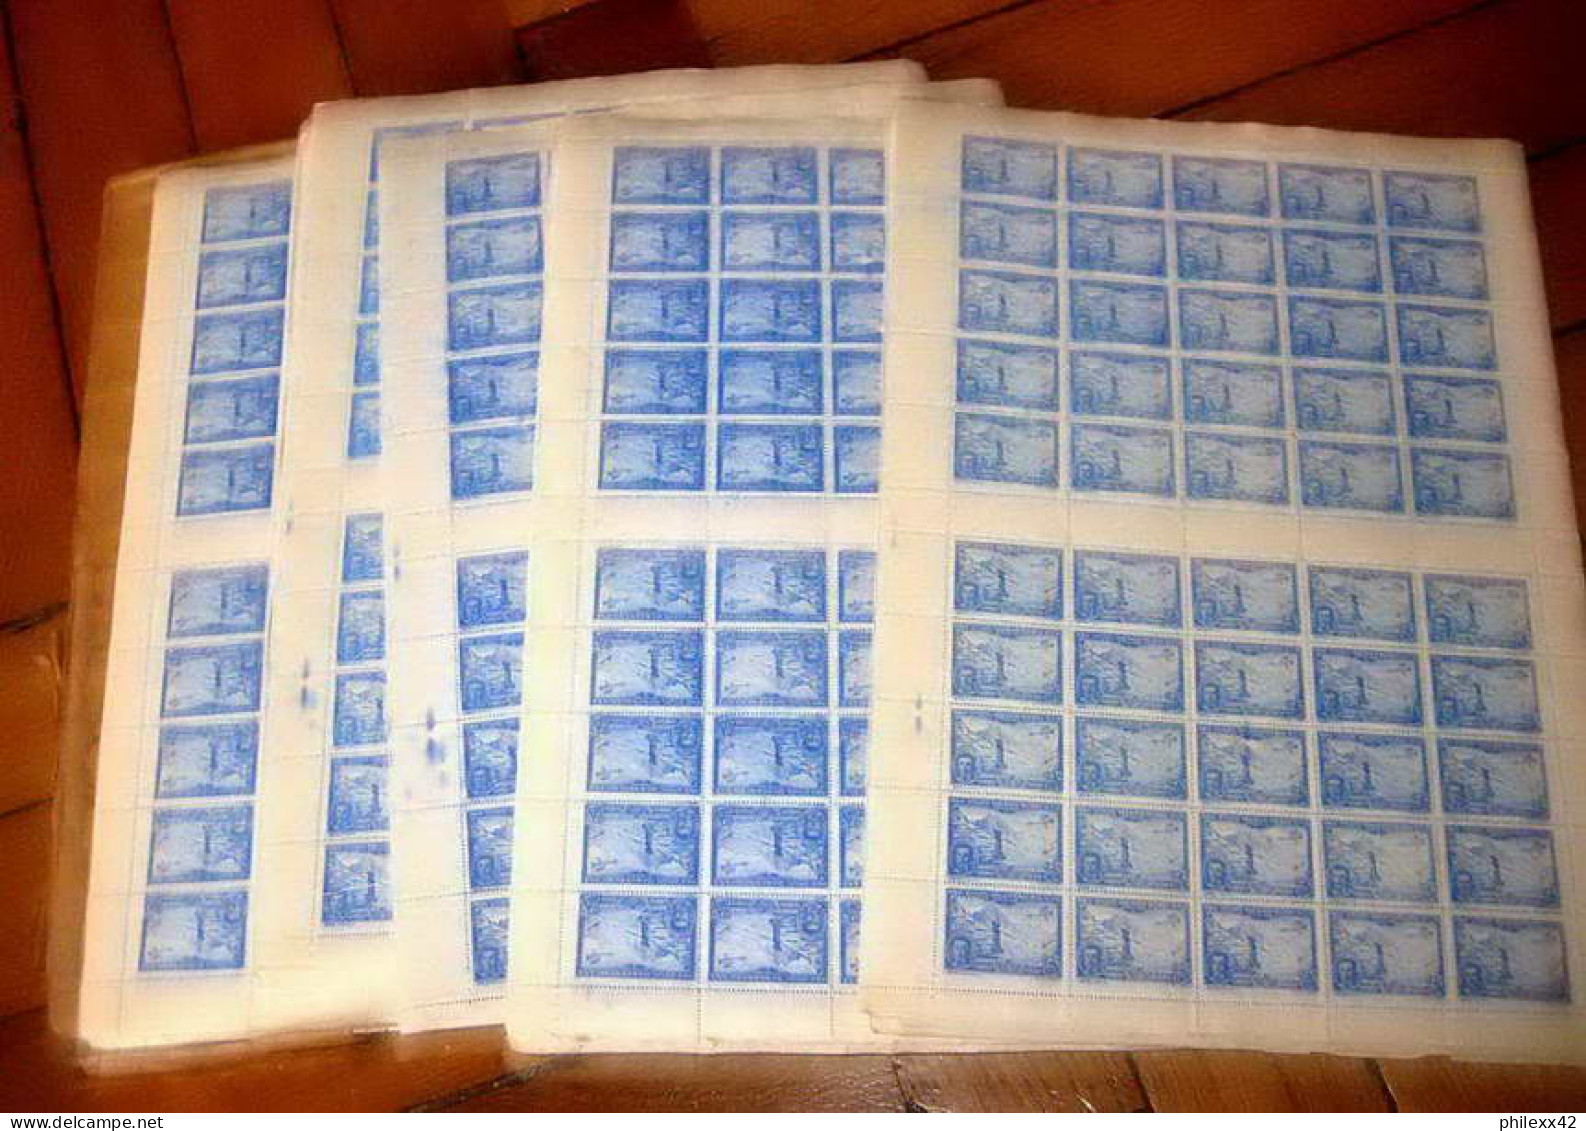 74-Enorme stock de timbres neuf ** d'espagne spain exposition de seville 1930 dont airmail cote + de 370 000 euros